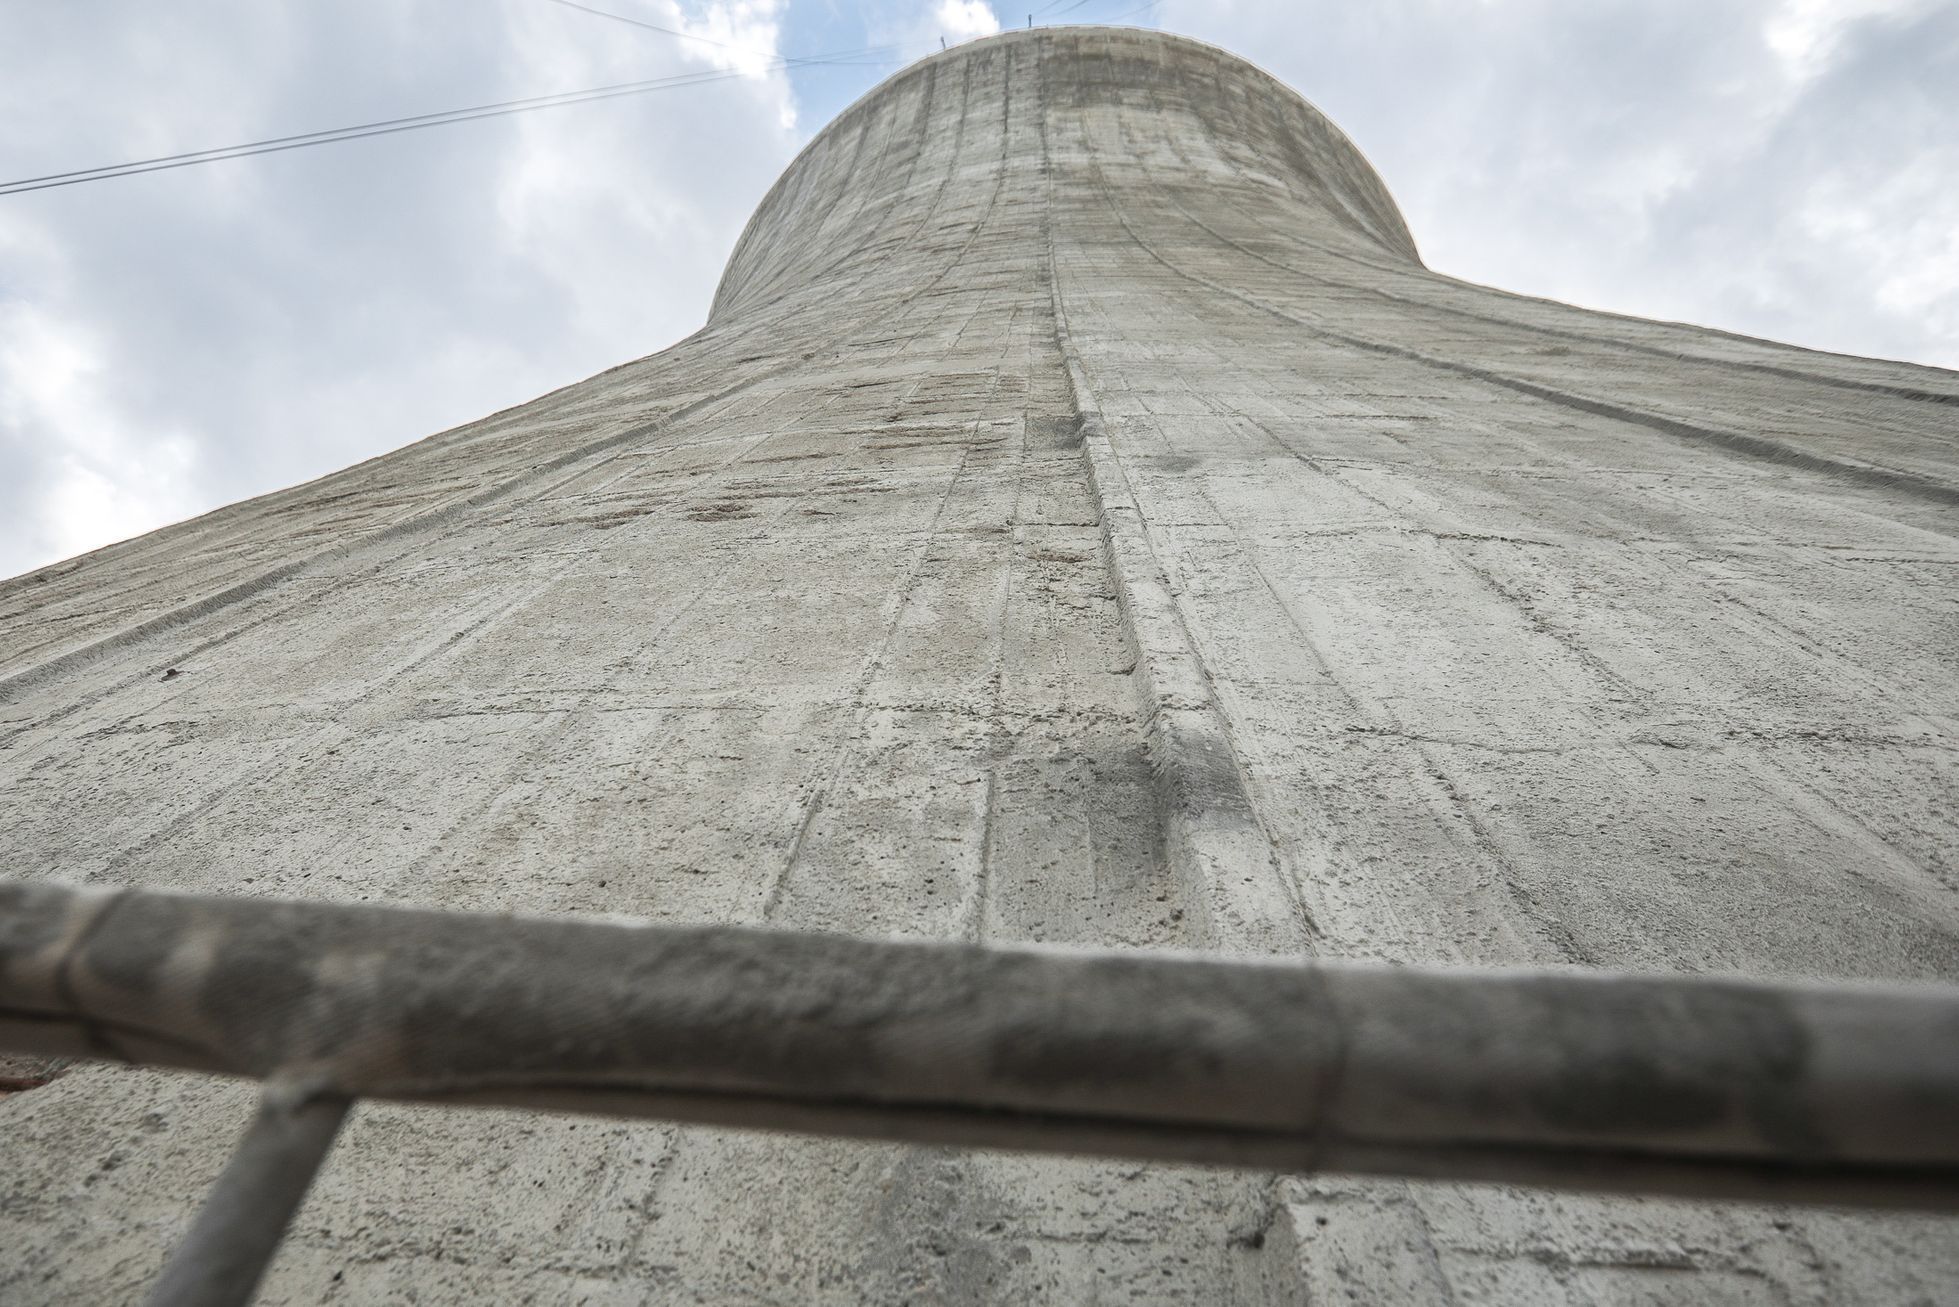 Jaderná elektrárna Dukovany, chladící věž, reaktor, strojovna, regulační tyče, radioaktivita, dozimetr